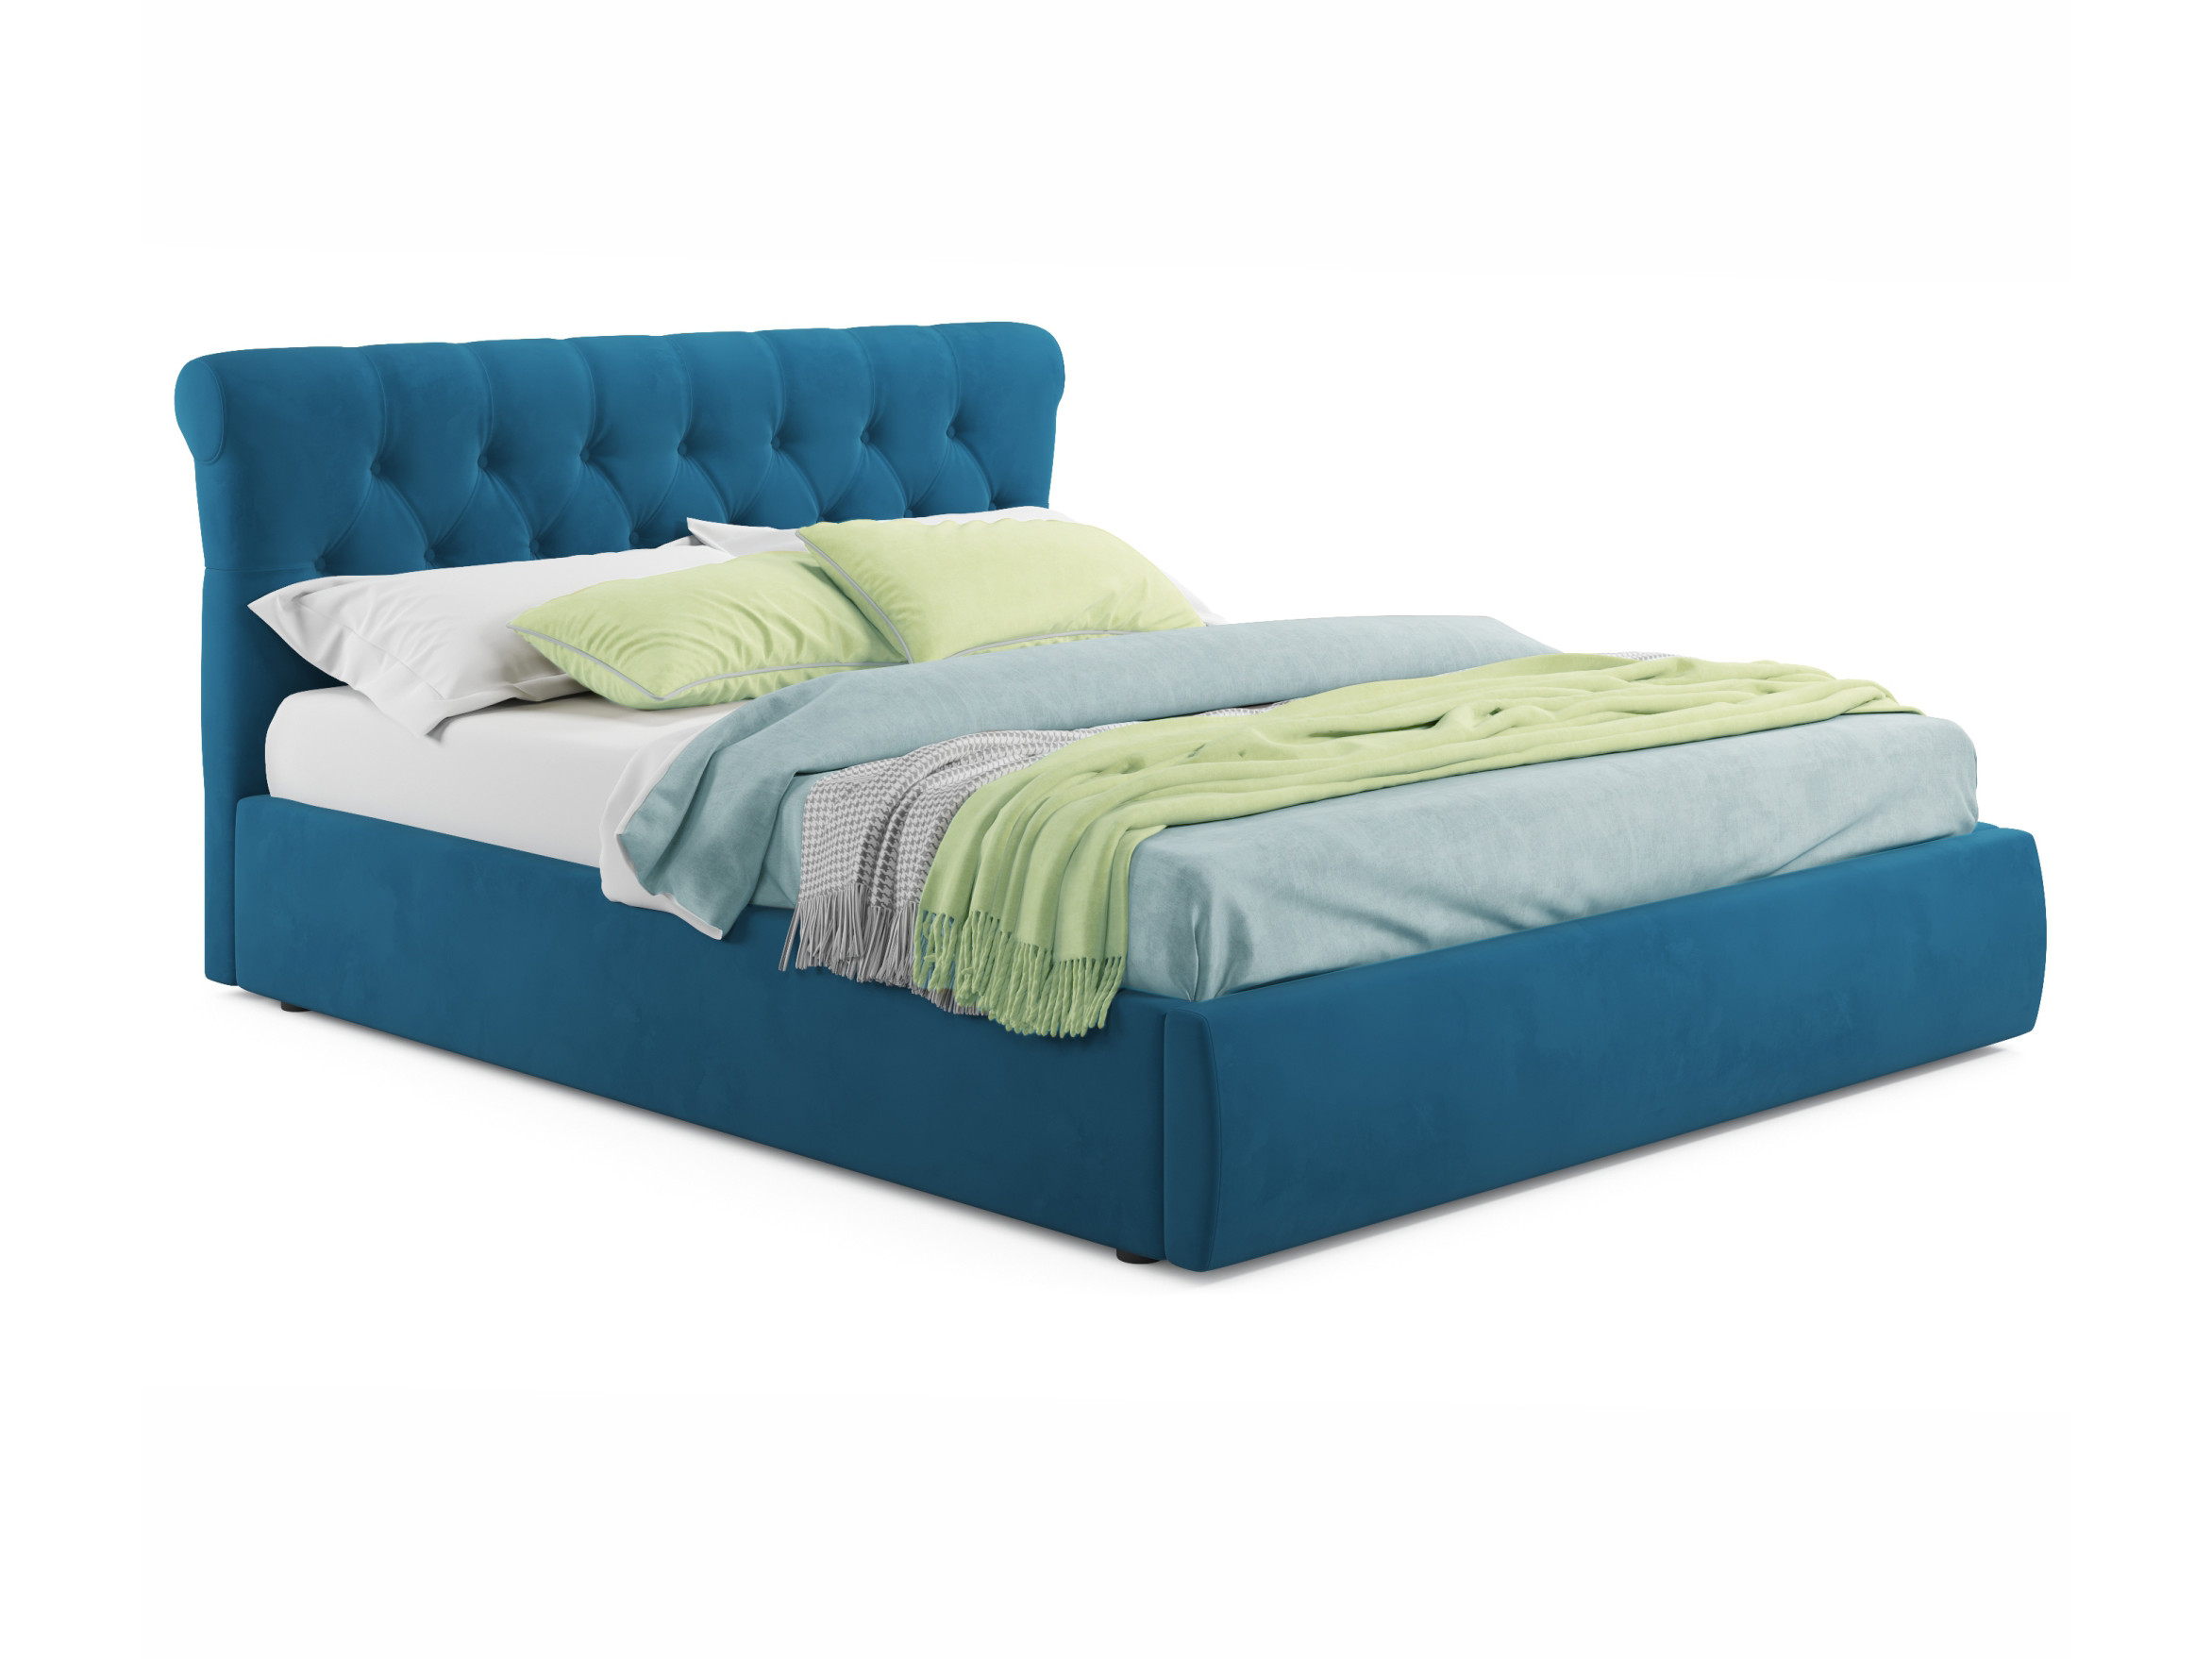 Мягкая кровать Ameli 1600 синяя с подъемным механизмом синий, Синий, Велюр, ДСП мягкая кровать ameli 1600 синяя с подъемным механизмом синий синий велюр дсп